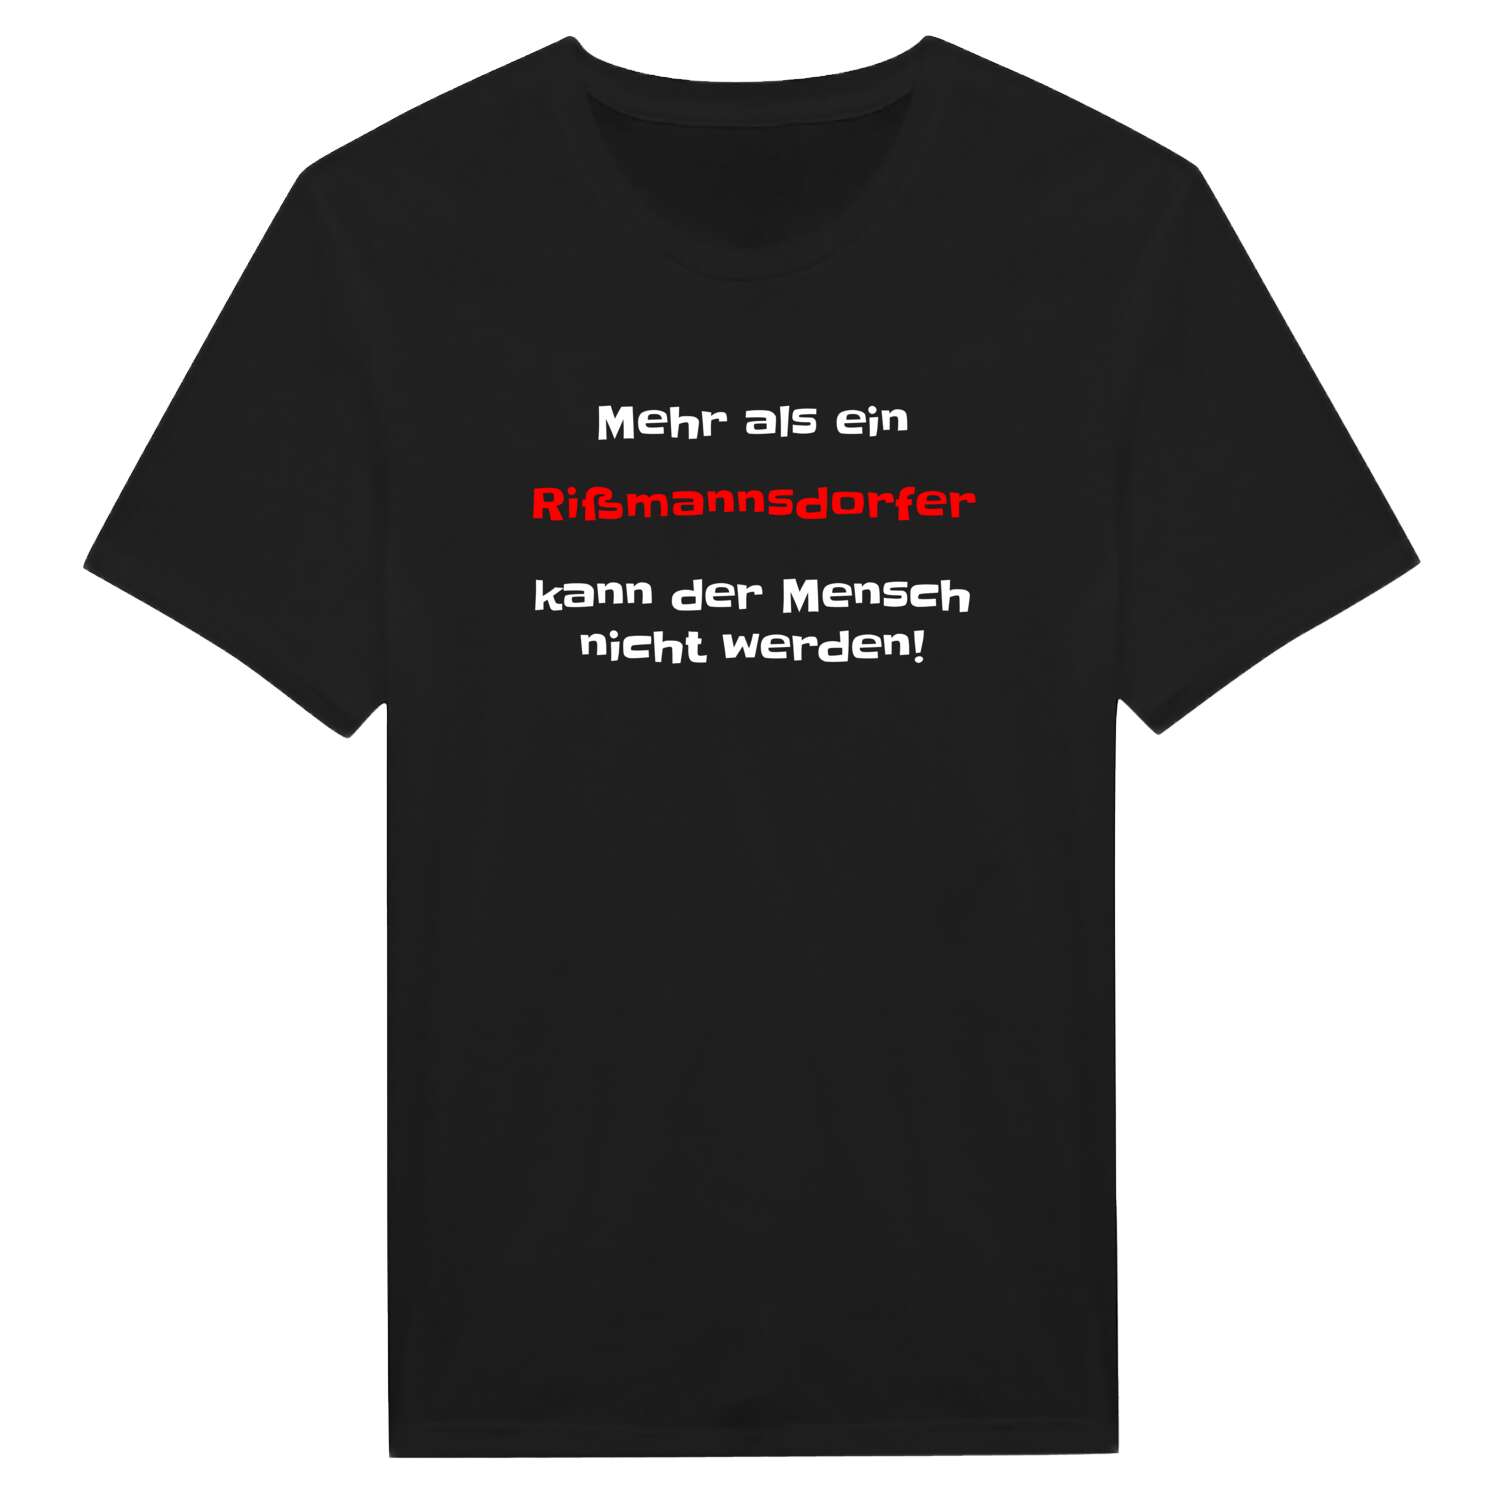 Rißmannsdorf T-Shirt »Mehr als ein«